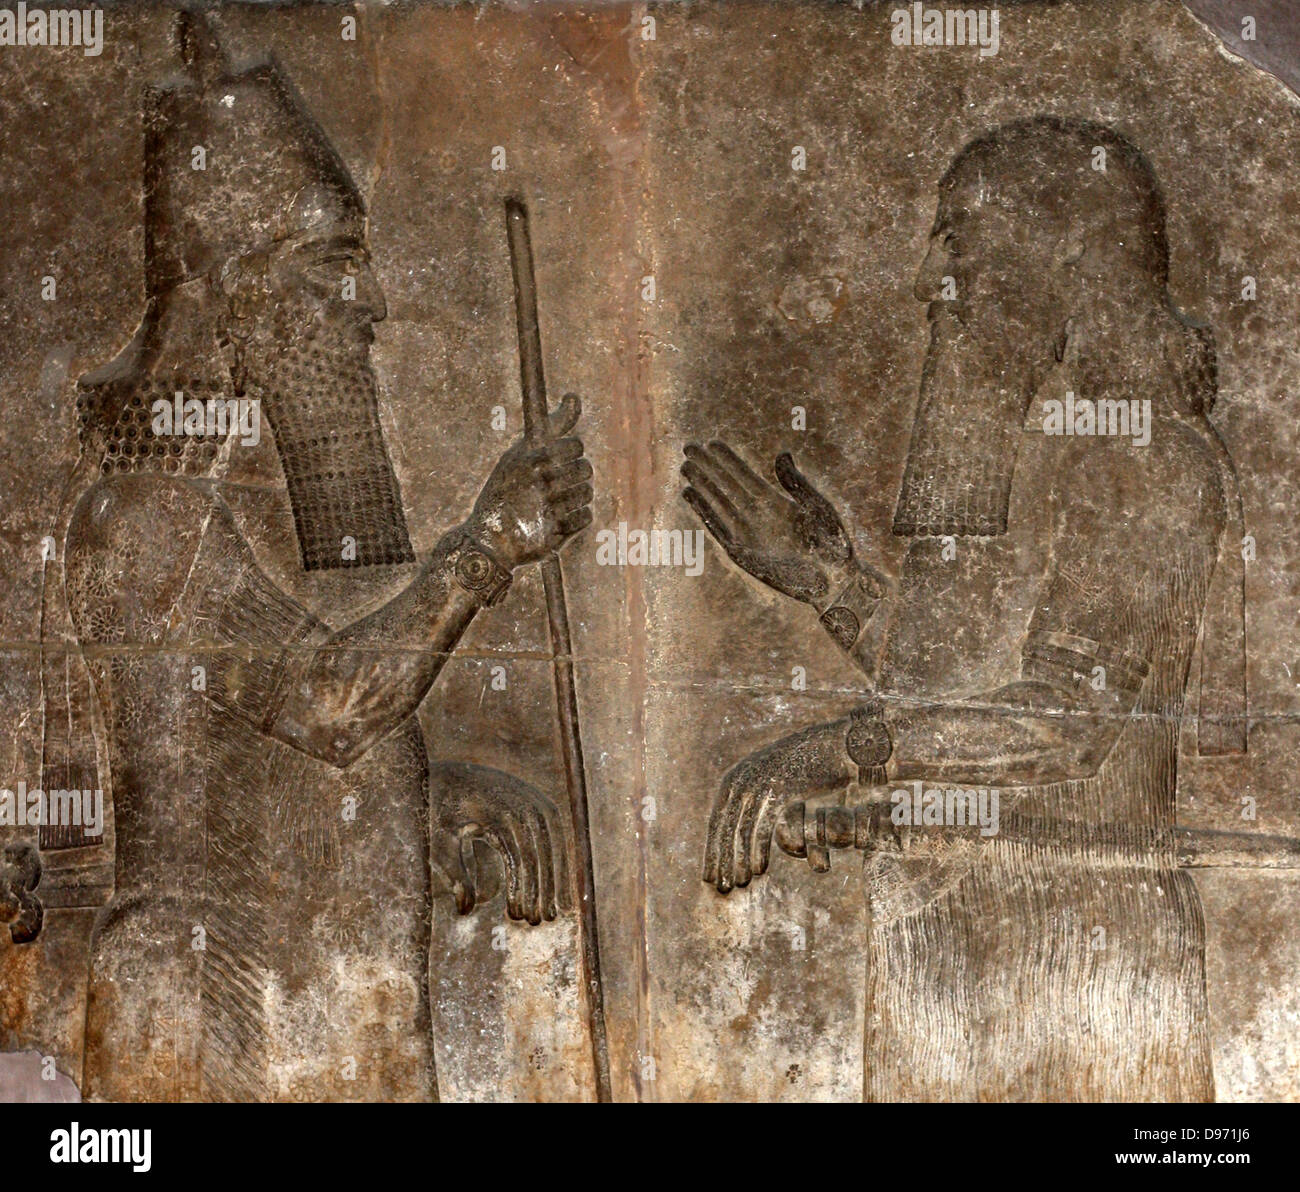 Il Regno di Sargon 721-705 l'Impero Assiro sotto Sargon II estesa dall Iran centrale al Mediterraneo. Il re si costruì una nuova città capitale, Khorsabad, con un magnificamente scolpito palace, che fu scoperto dall'archeologo francese, Botta. Foto Stock